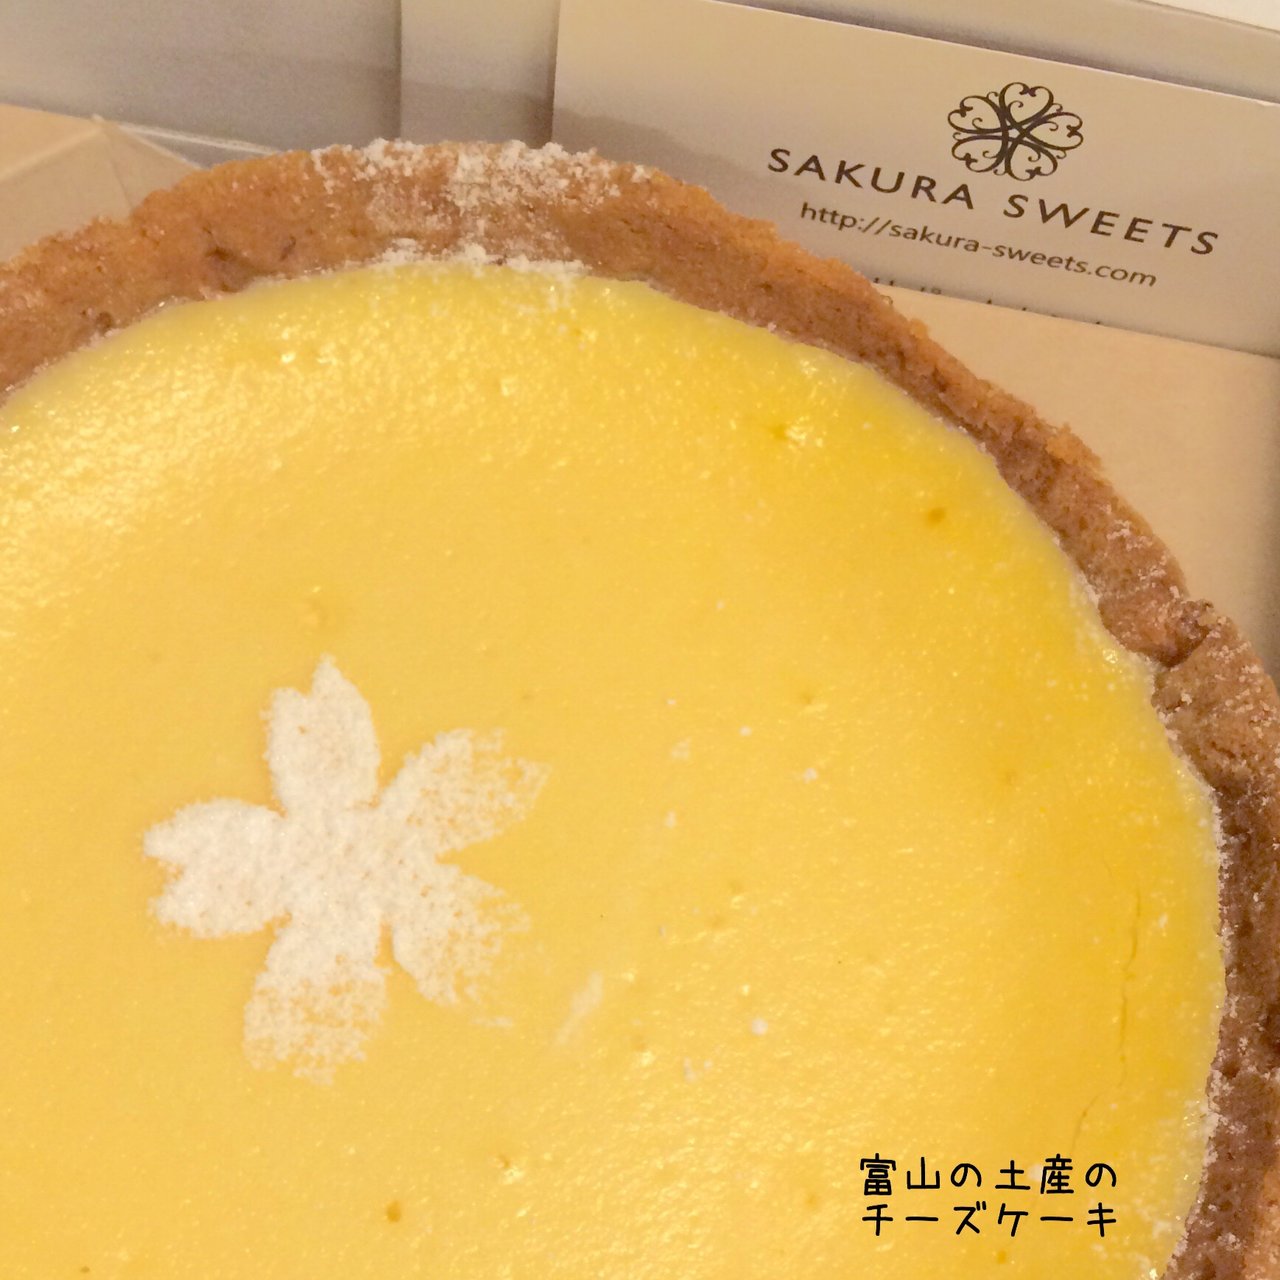 クラシックチーズケーキ サクラスイーツ マリエ店 Sakura Sweets の口コミ一覧 おいしい一皿が集まるグルメコミュニティサービス Sarah